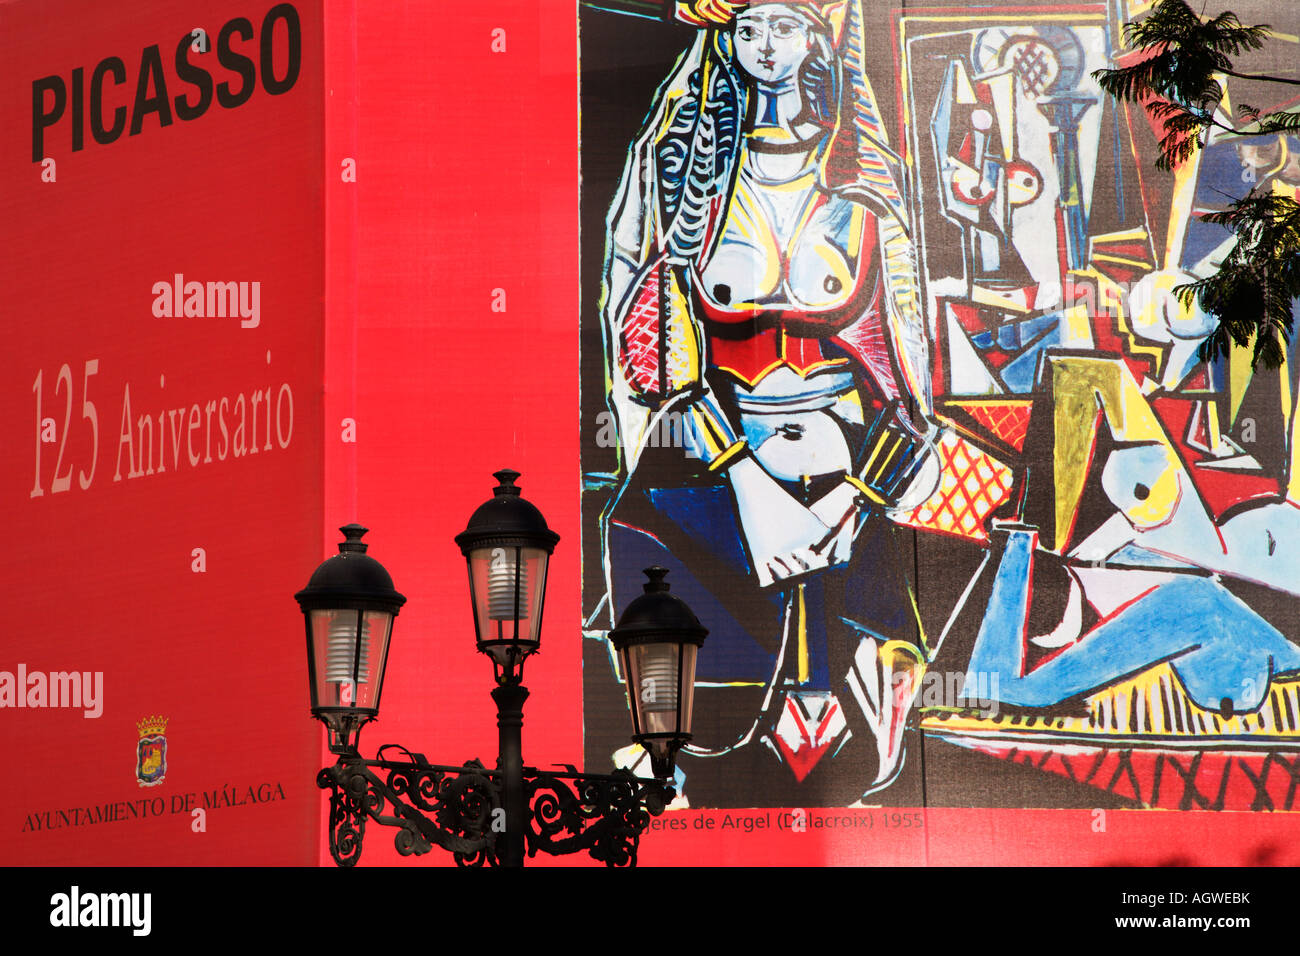 Picasso 125th Anniversary Mural in Plaza de la Merced Malaga Spa Stock Photo